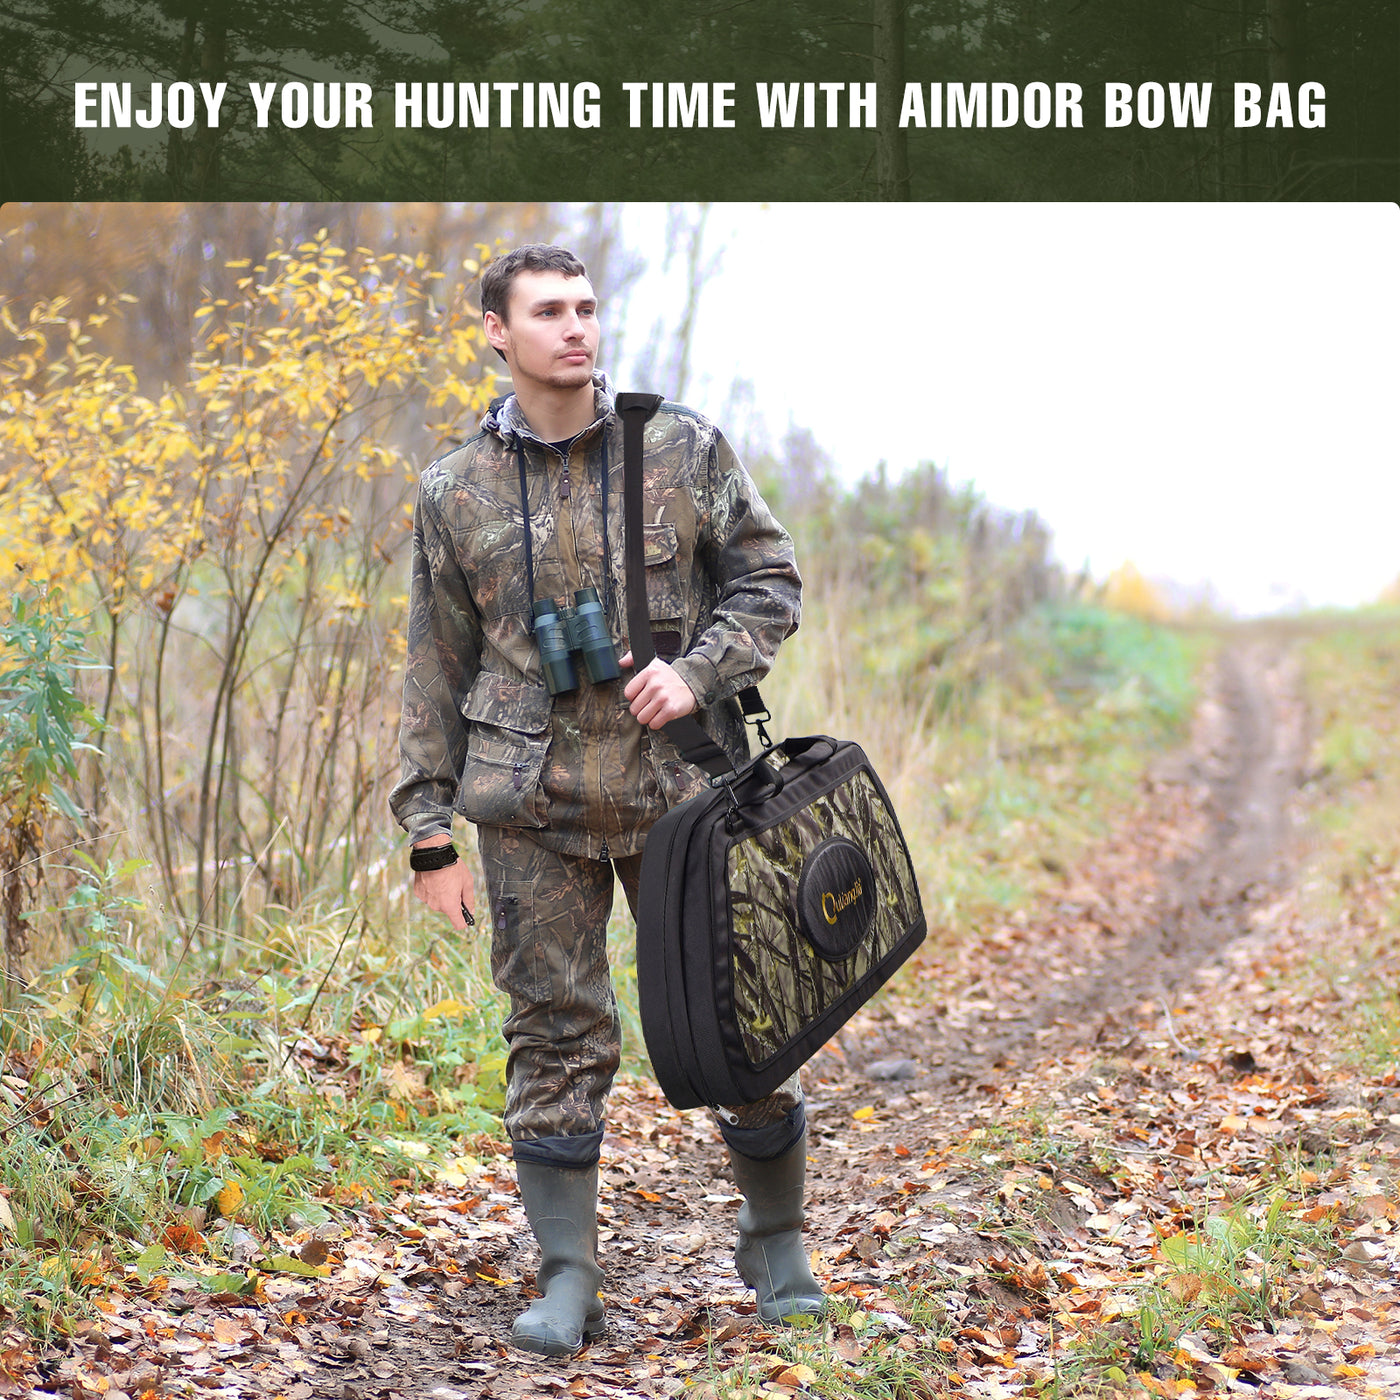 GB007 Archery Bow Bag Safe Shot Bow Case Compound Bow Bag Portable Carry Bag Camo